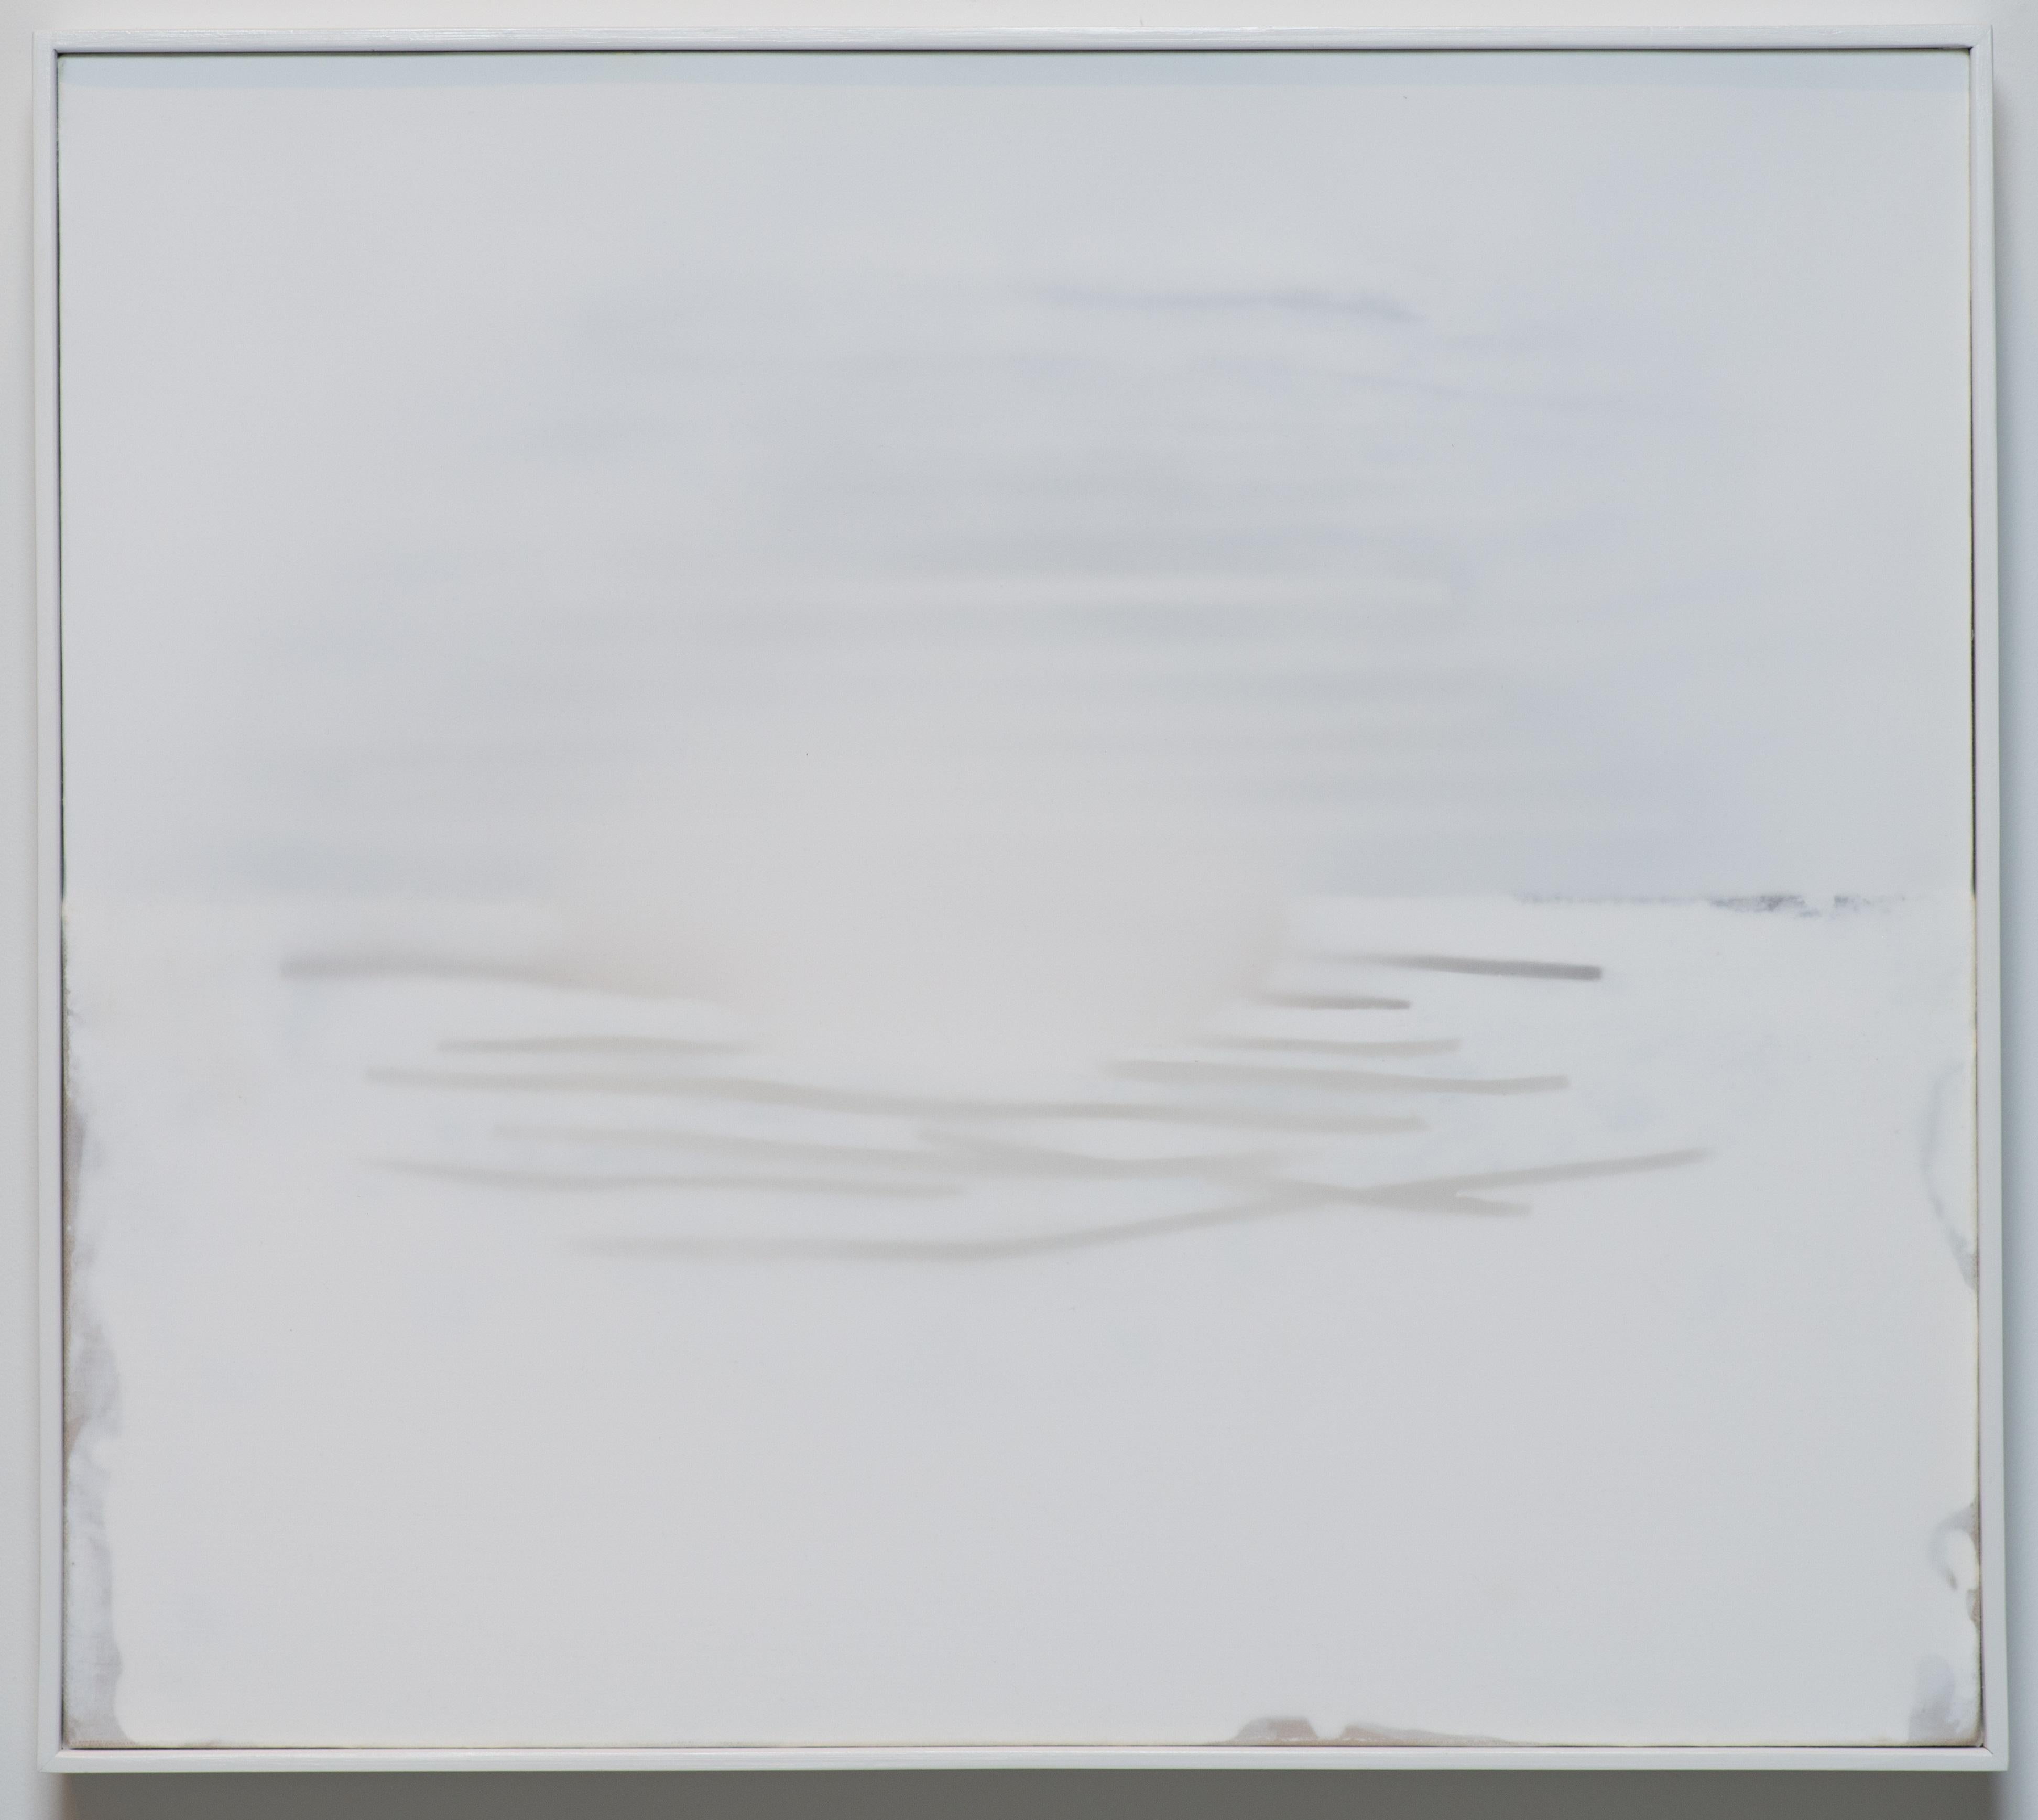 Peinture abstraite sur toile, blanc sur blanc, petite, minimaliste - Mixed Media Art de Udo Noger